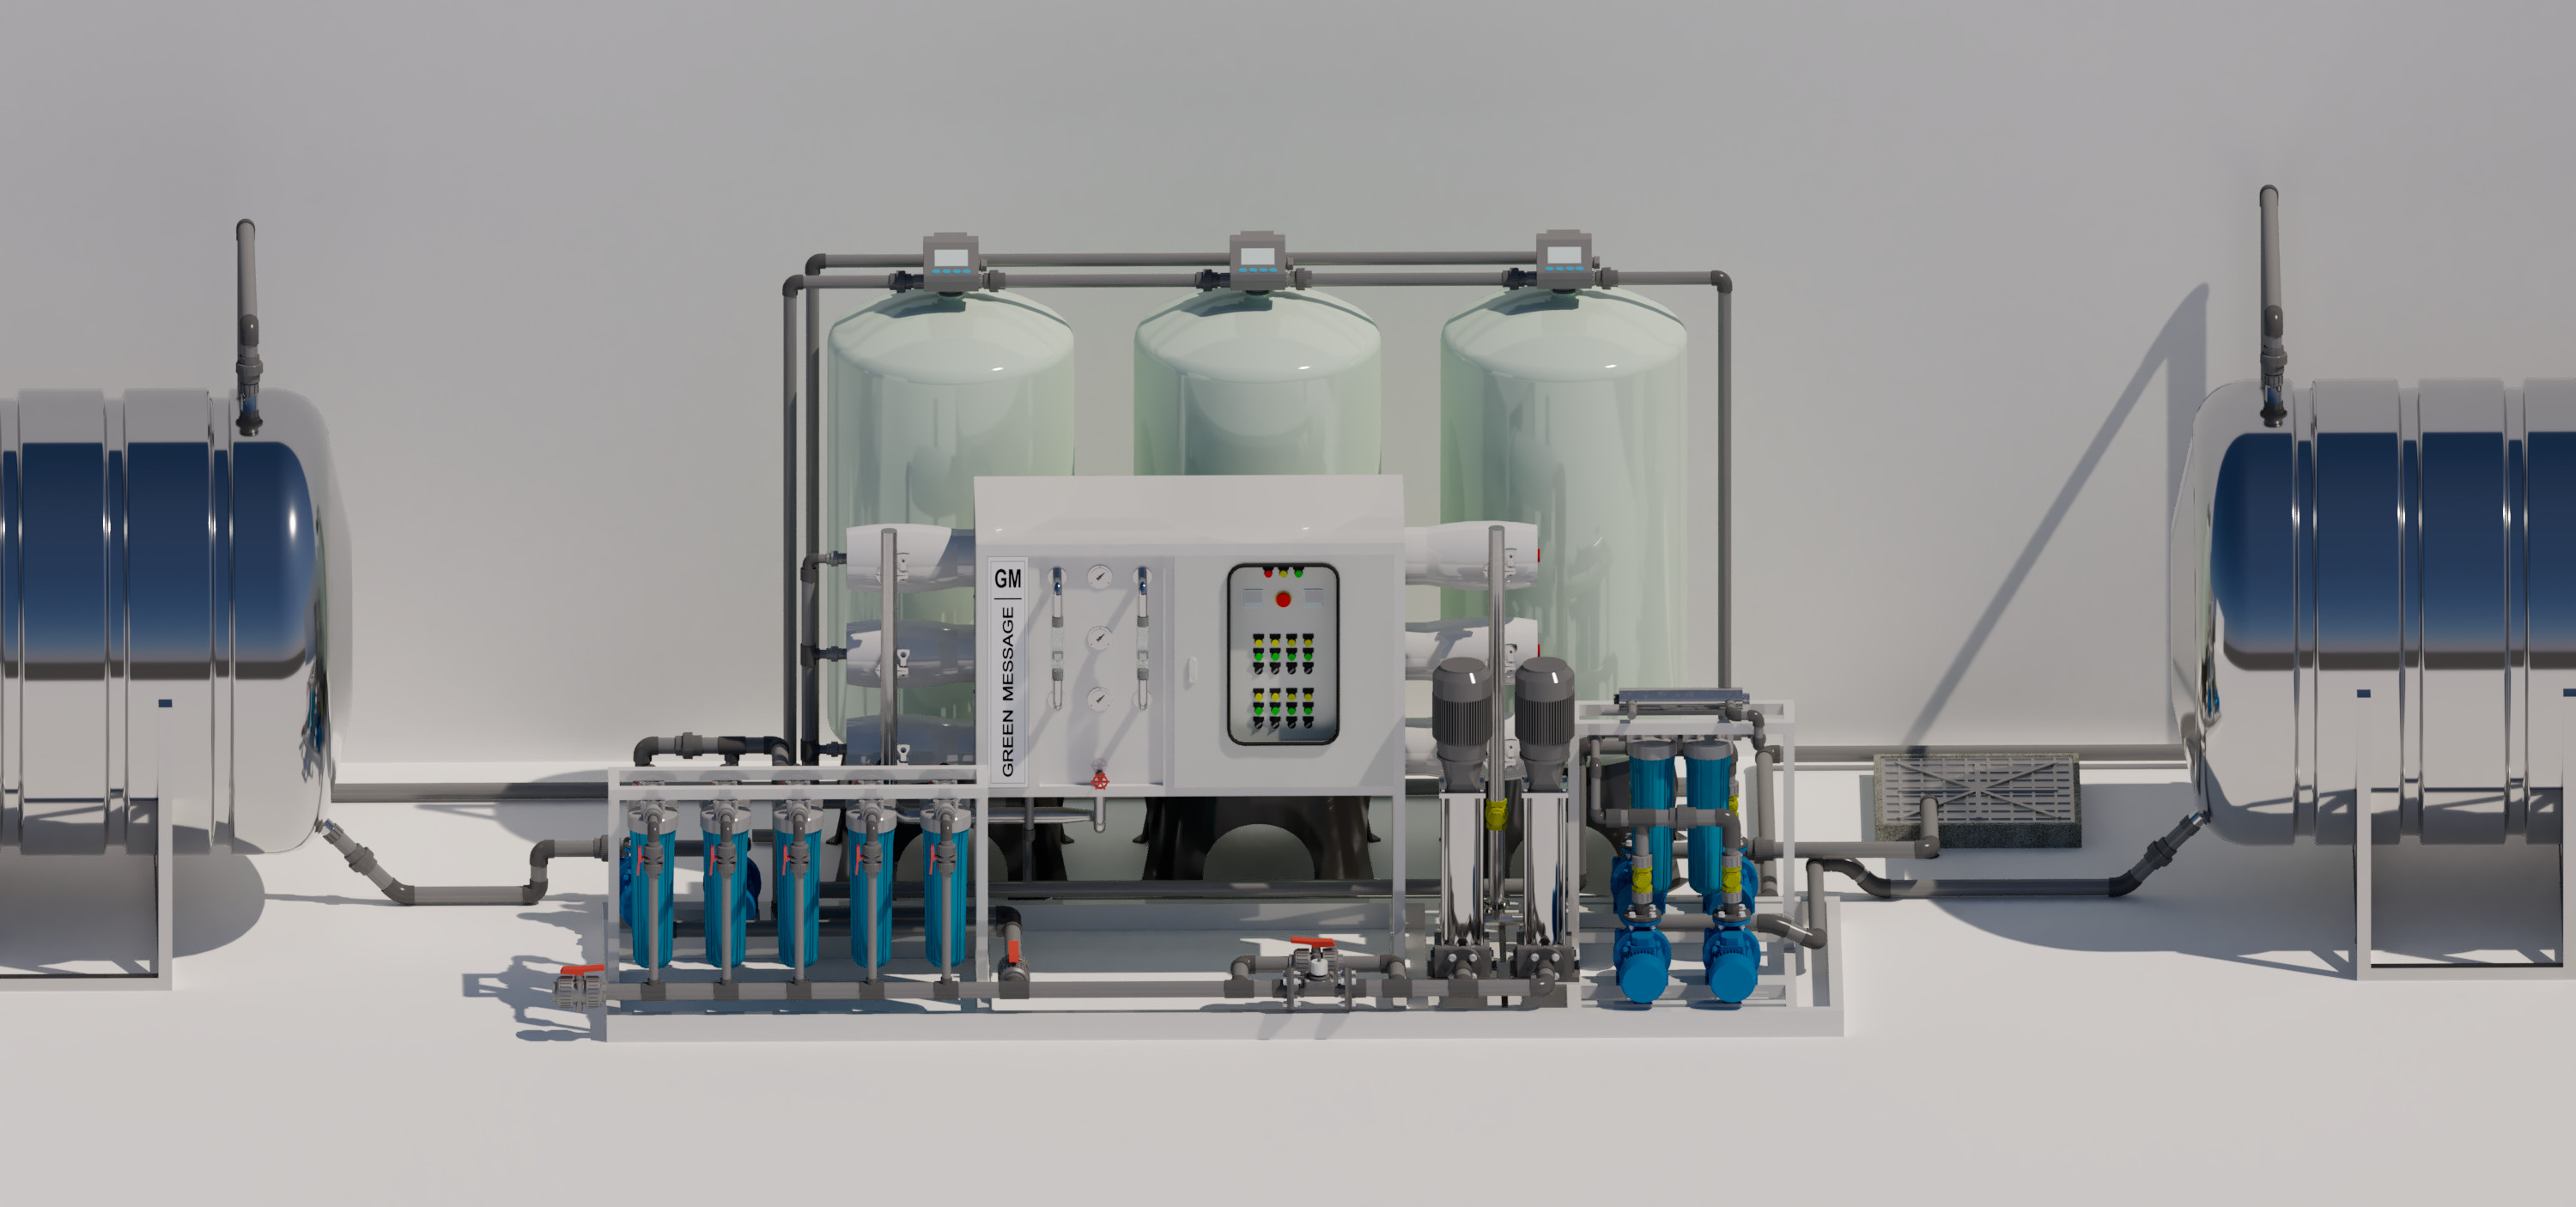 Thiết kế, thi công hệ thống máy lọc nước RO công nghiệp 5000L/H- Thiết kế riêng theo yêu cầu sử dụng.